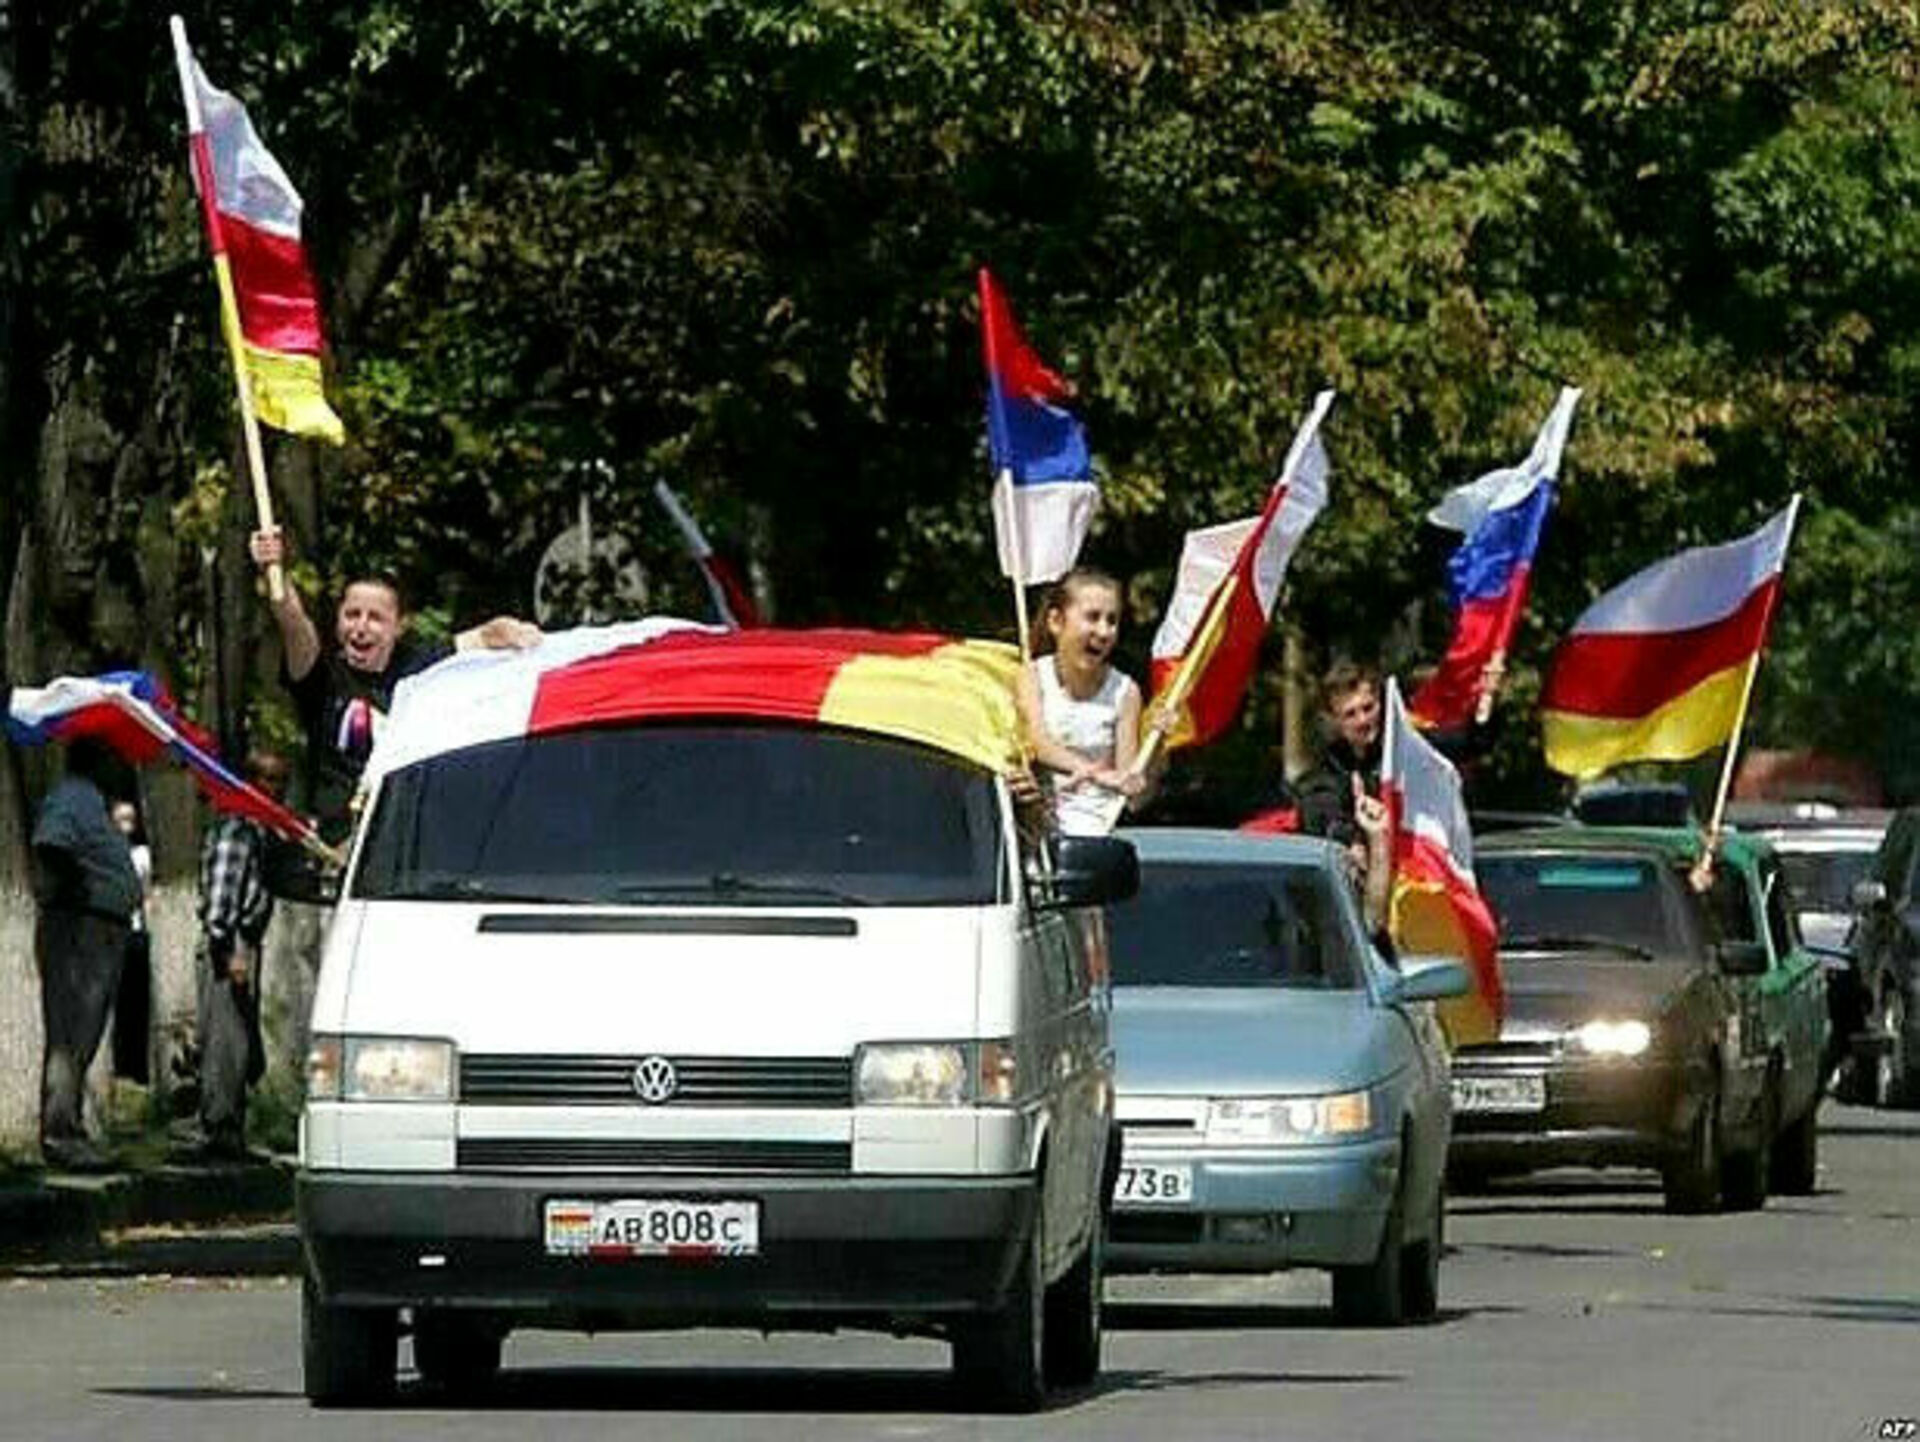 Осетия вхождения. 26 Августа 2008 Южная Осетия. 26 Августа 2008 независимость Южной Осетии. 17 Июля референдум в Южной Осетии. Признание Россией независимости Абхазии и Южной Осетии.